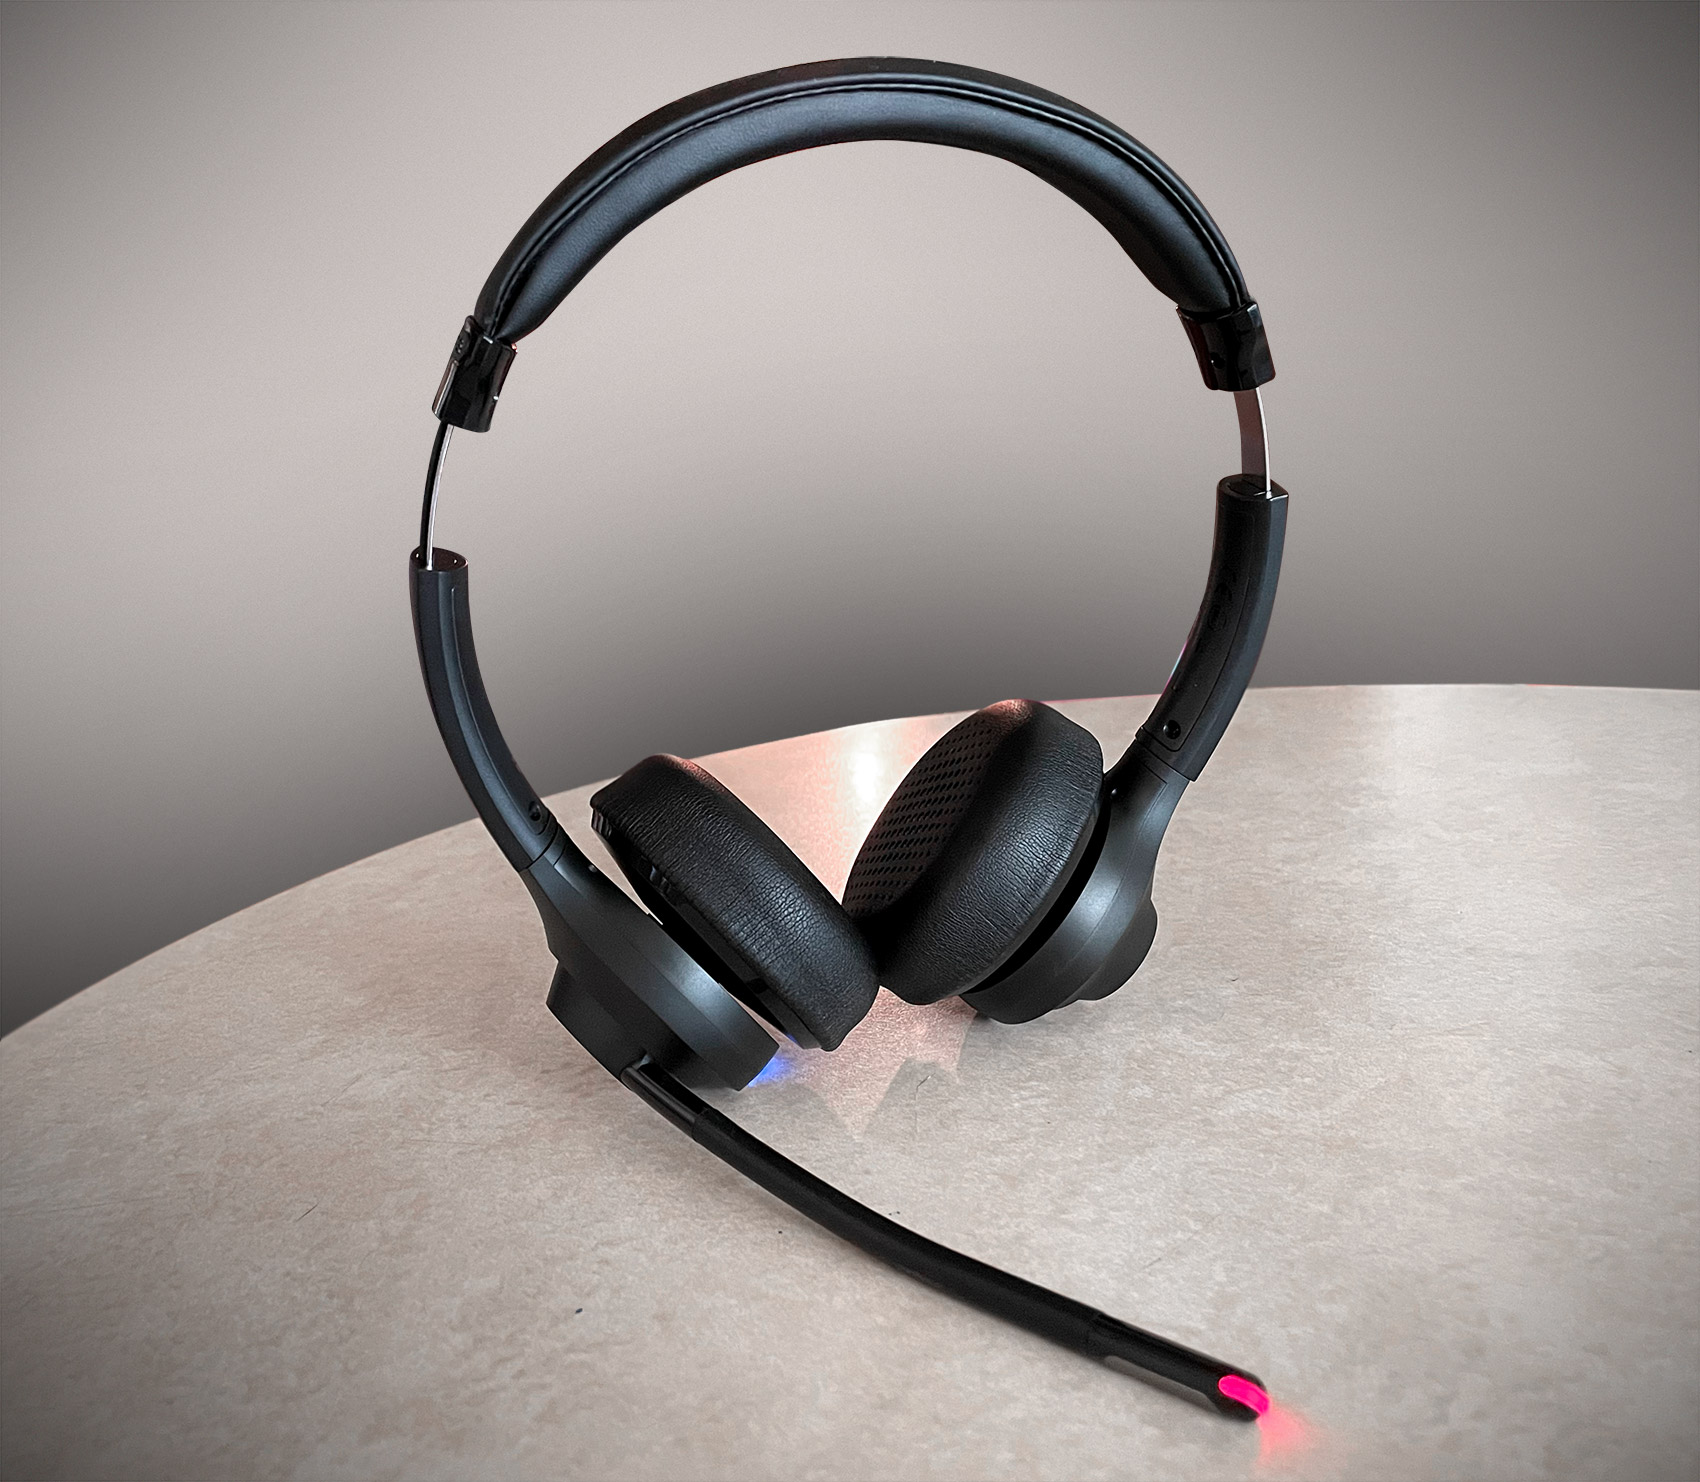 door elkaar haspelen Netto Malaise JLab Go Work Wireless On-Ear Headphones review - The Gadgeteer